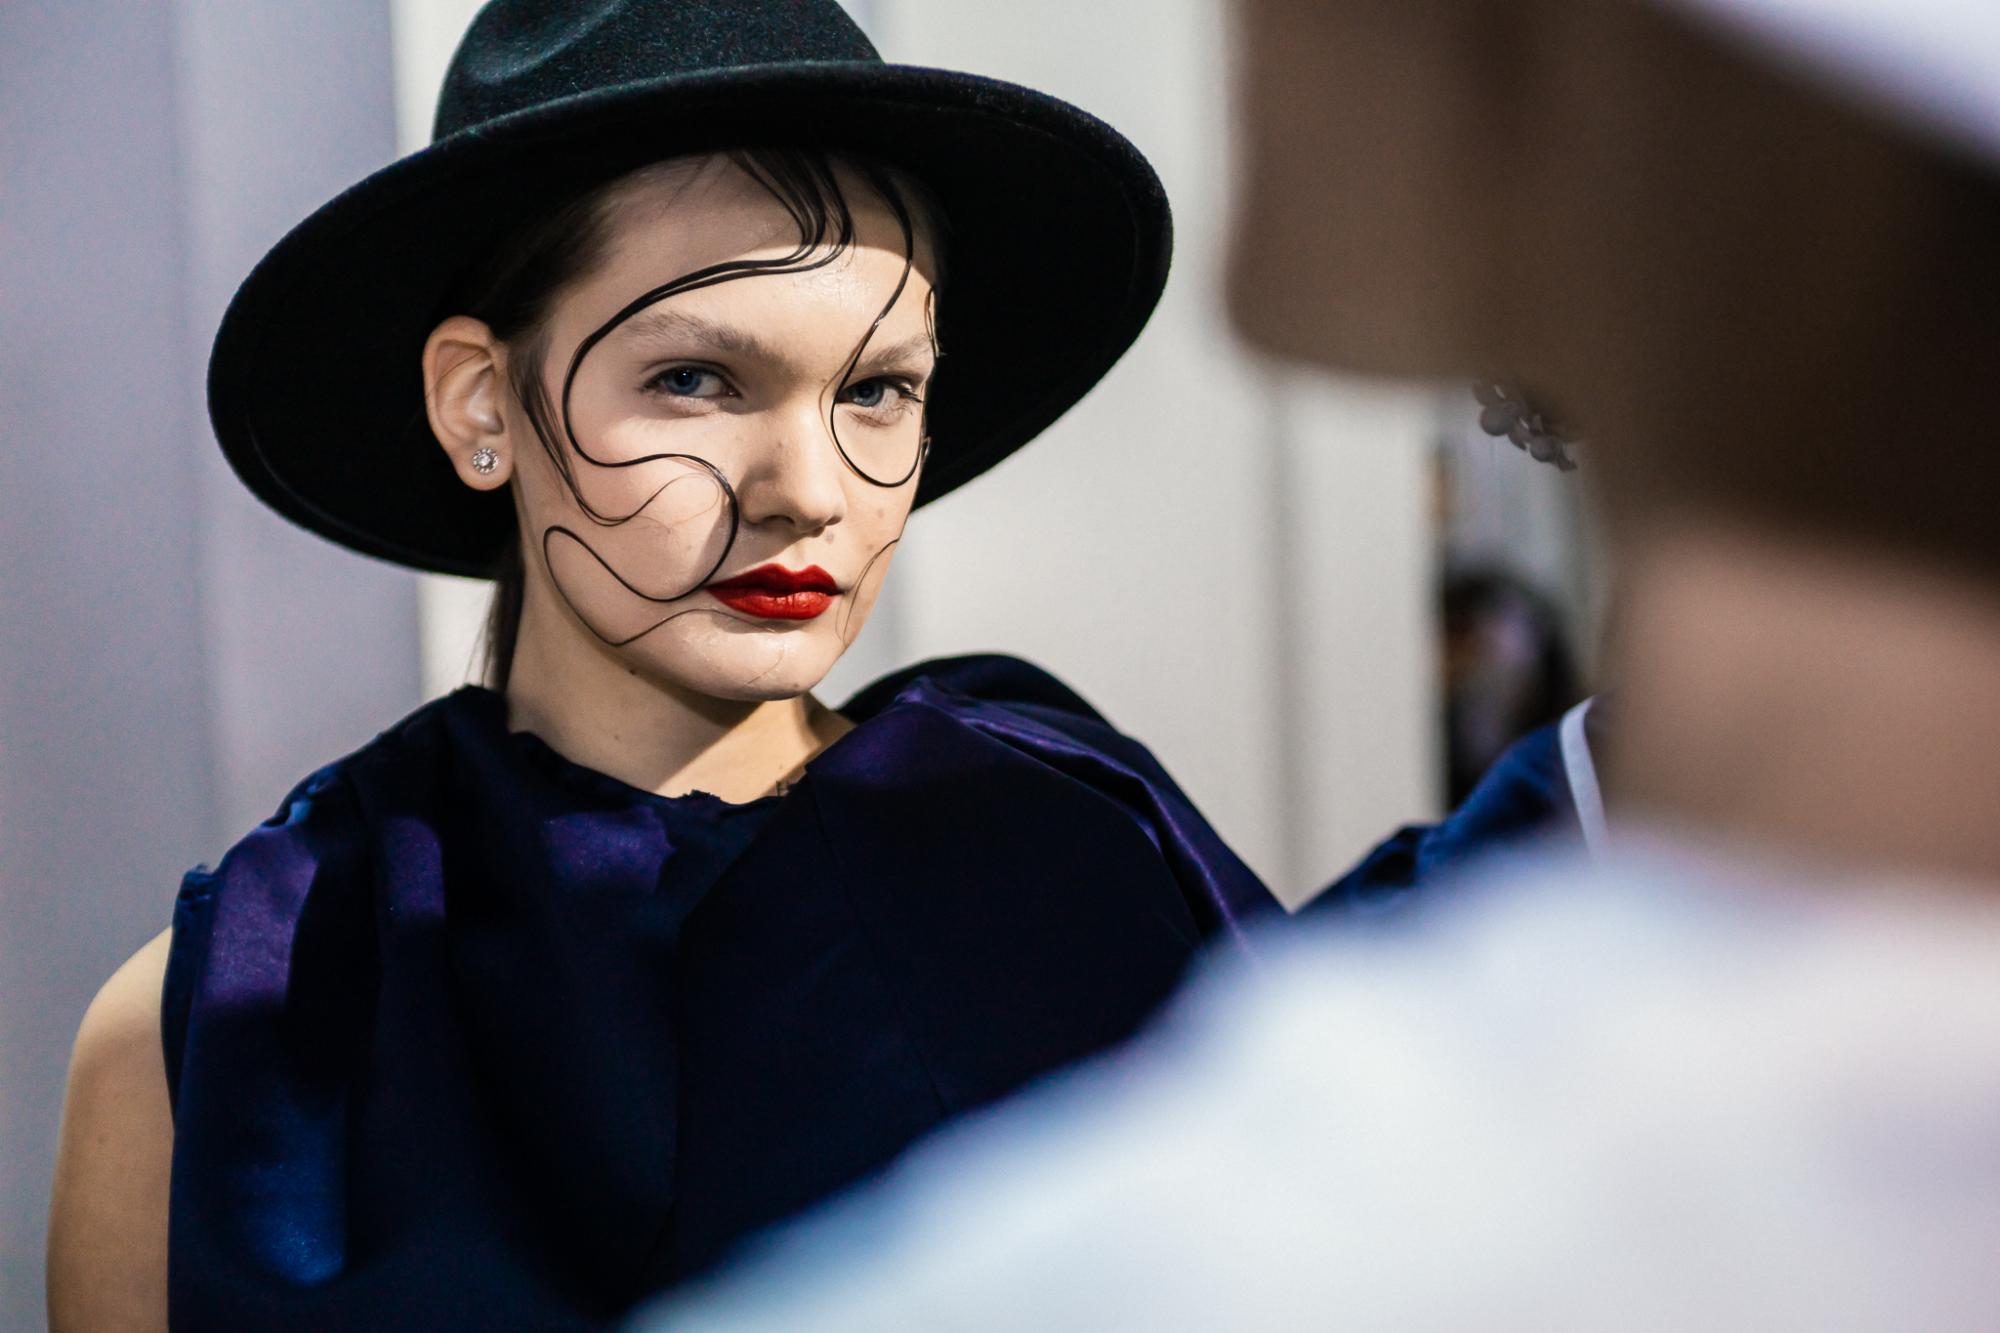 25-й Ukrainian Fashion Week: бекстейдж найгучнішої модної події в Україні